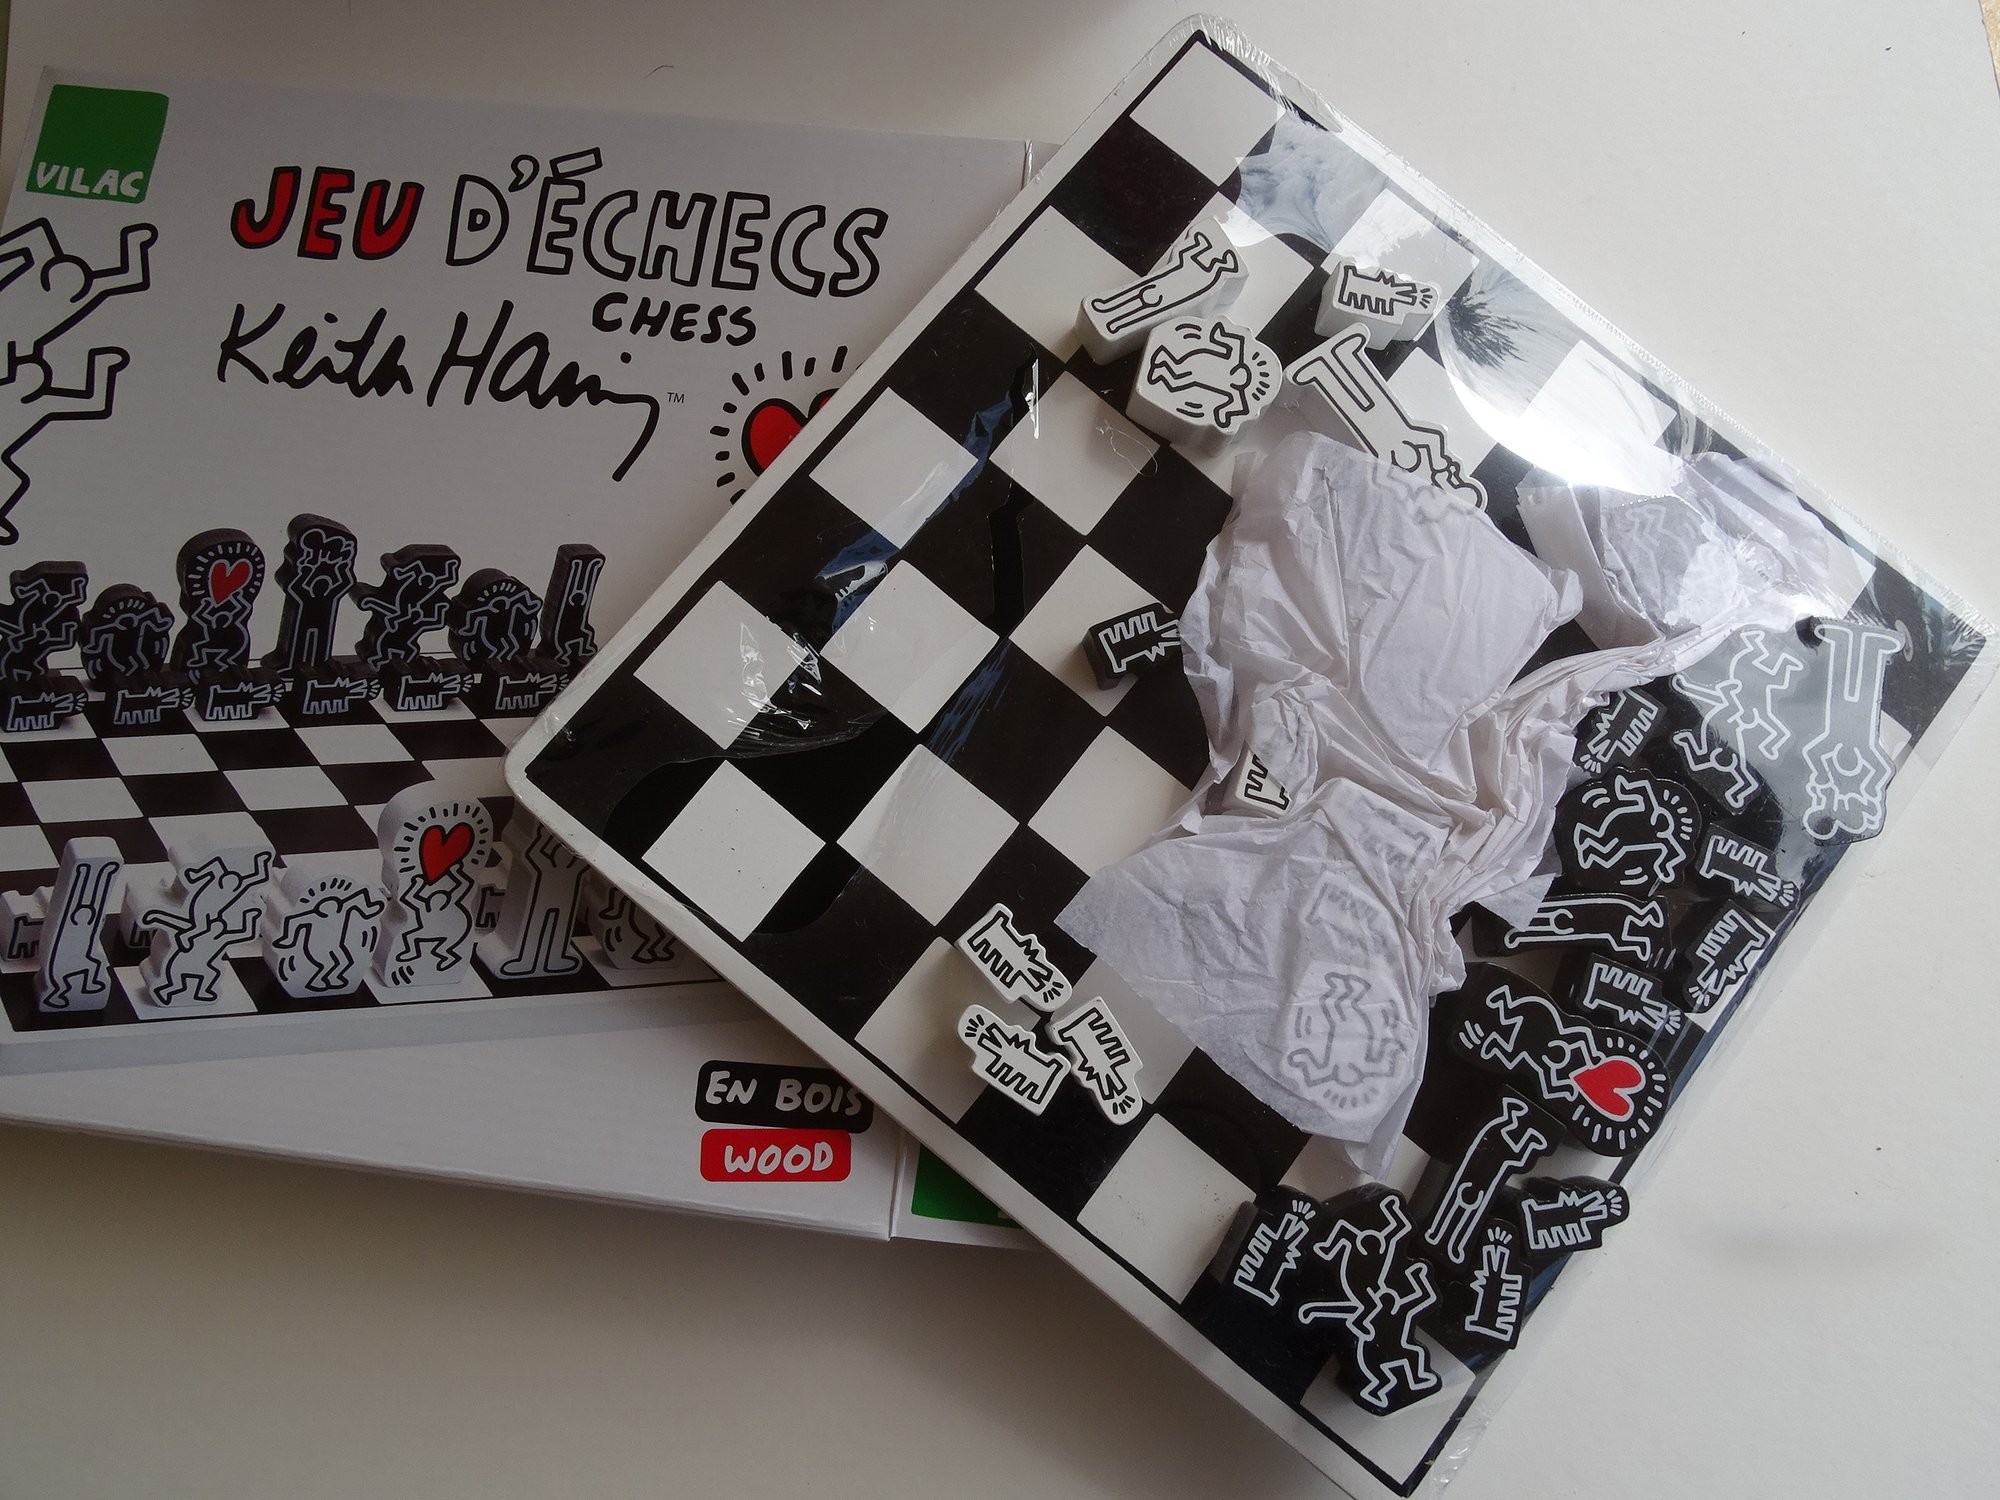 Keith Haring x Vilac Chess Set Board - US